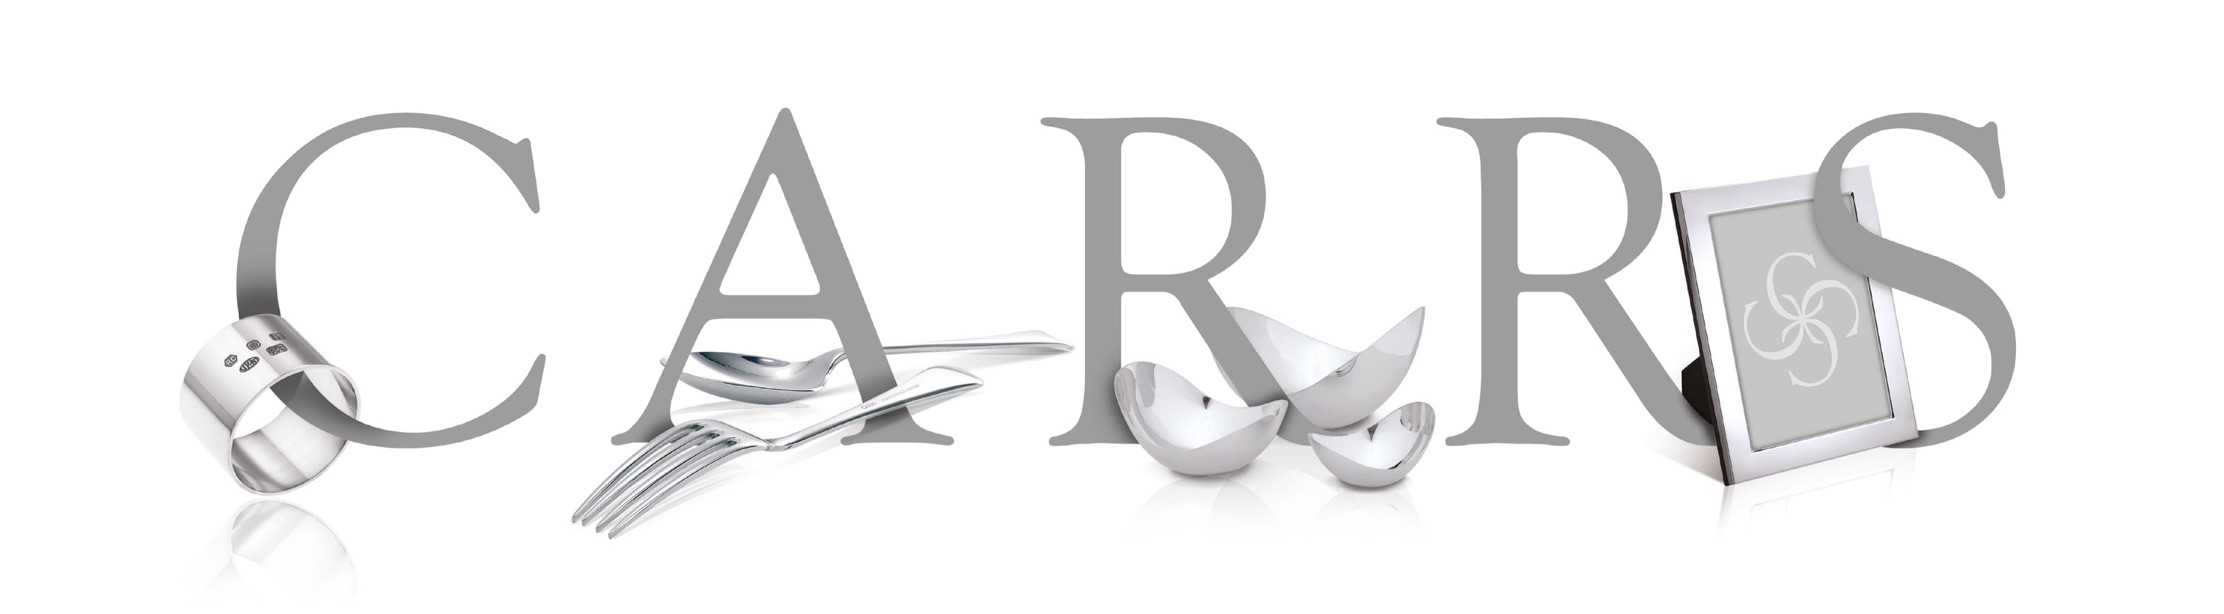 Carrs Silver logo